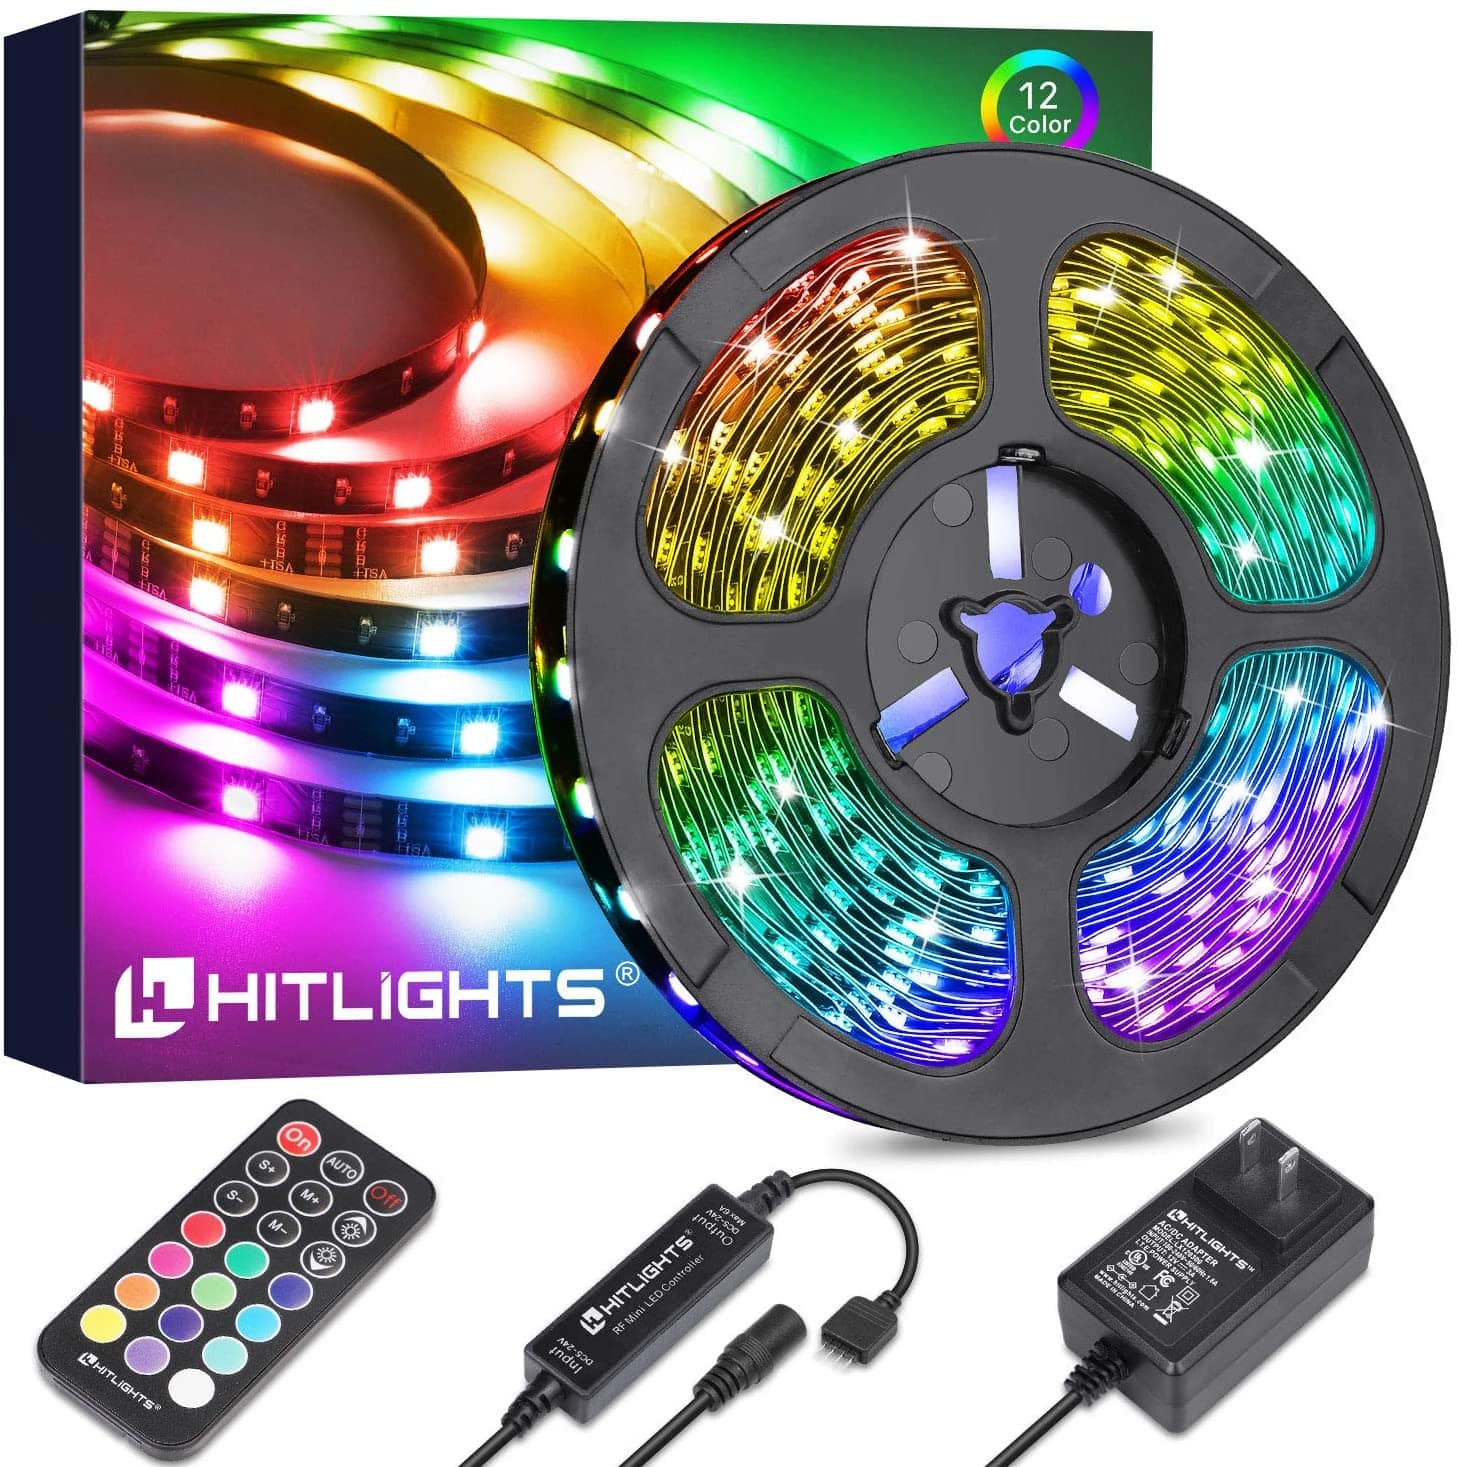 http://hitlights.com/cdn/shop/files/32-8ft-led-strip-lights-hitlights-5050-rgb-color-changing-l1012v-mc1-3230-k-hitlights-amazon-15568924672079.jpg?v=1698886091